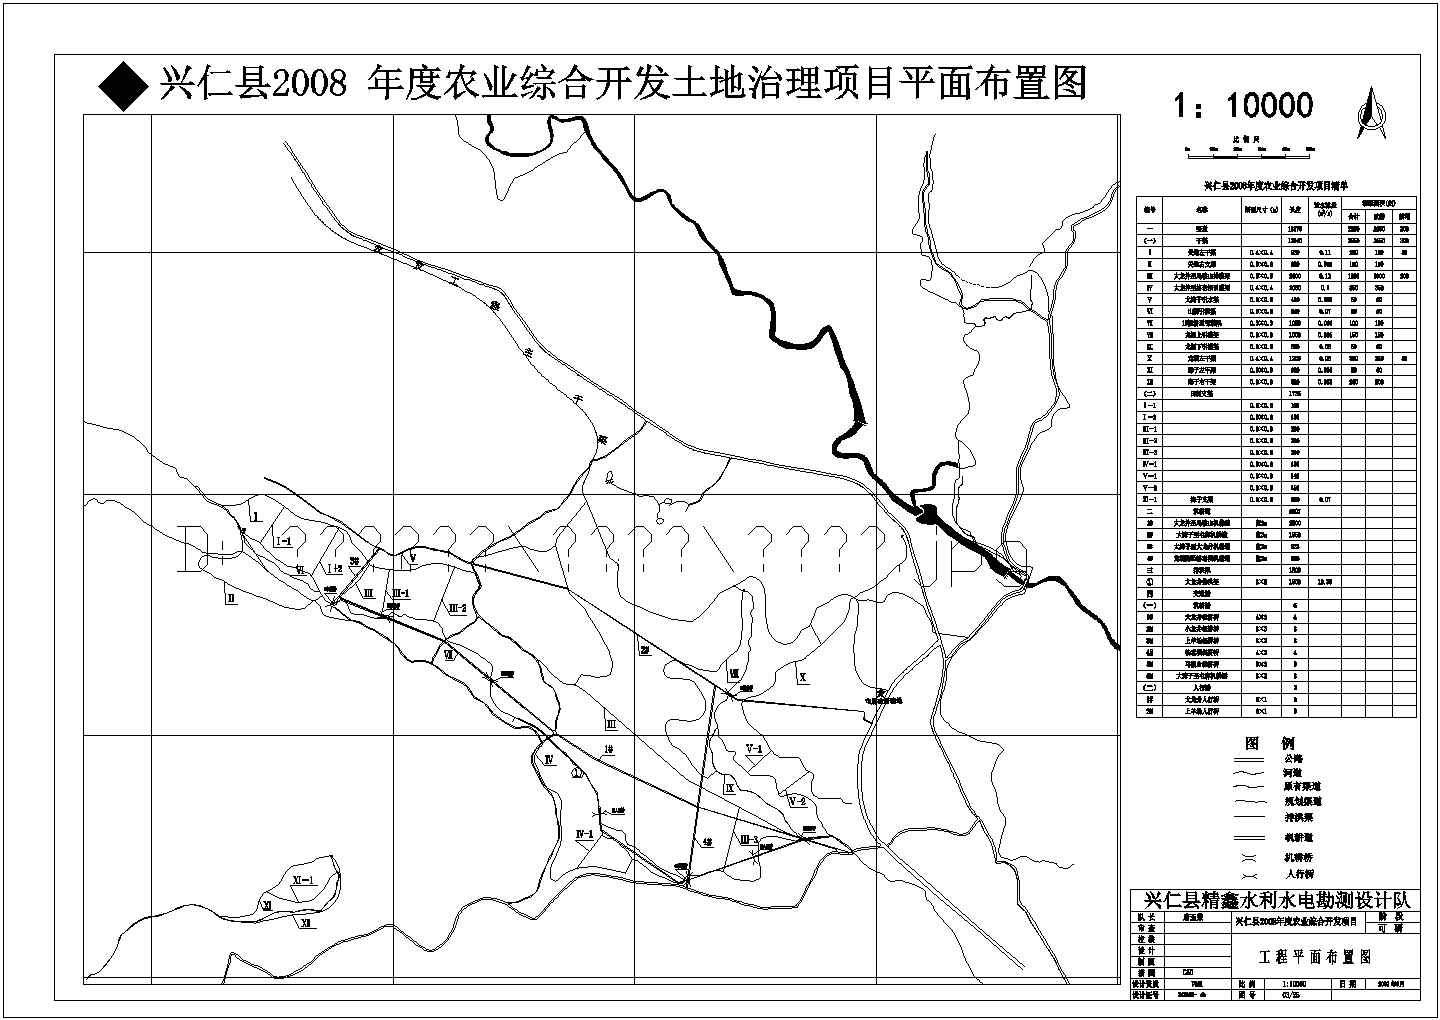 兴仁县2008年度农业综合开发土地治理项目初设图纸